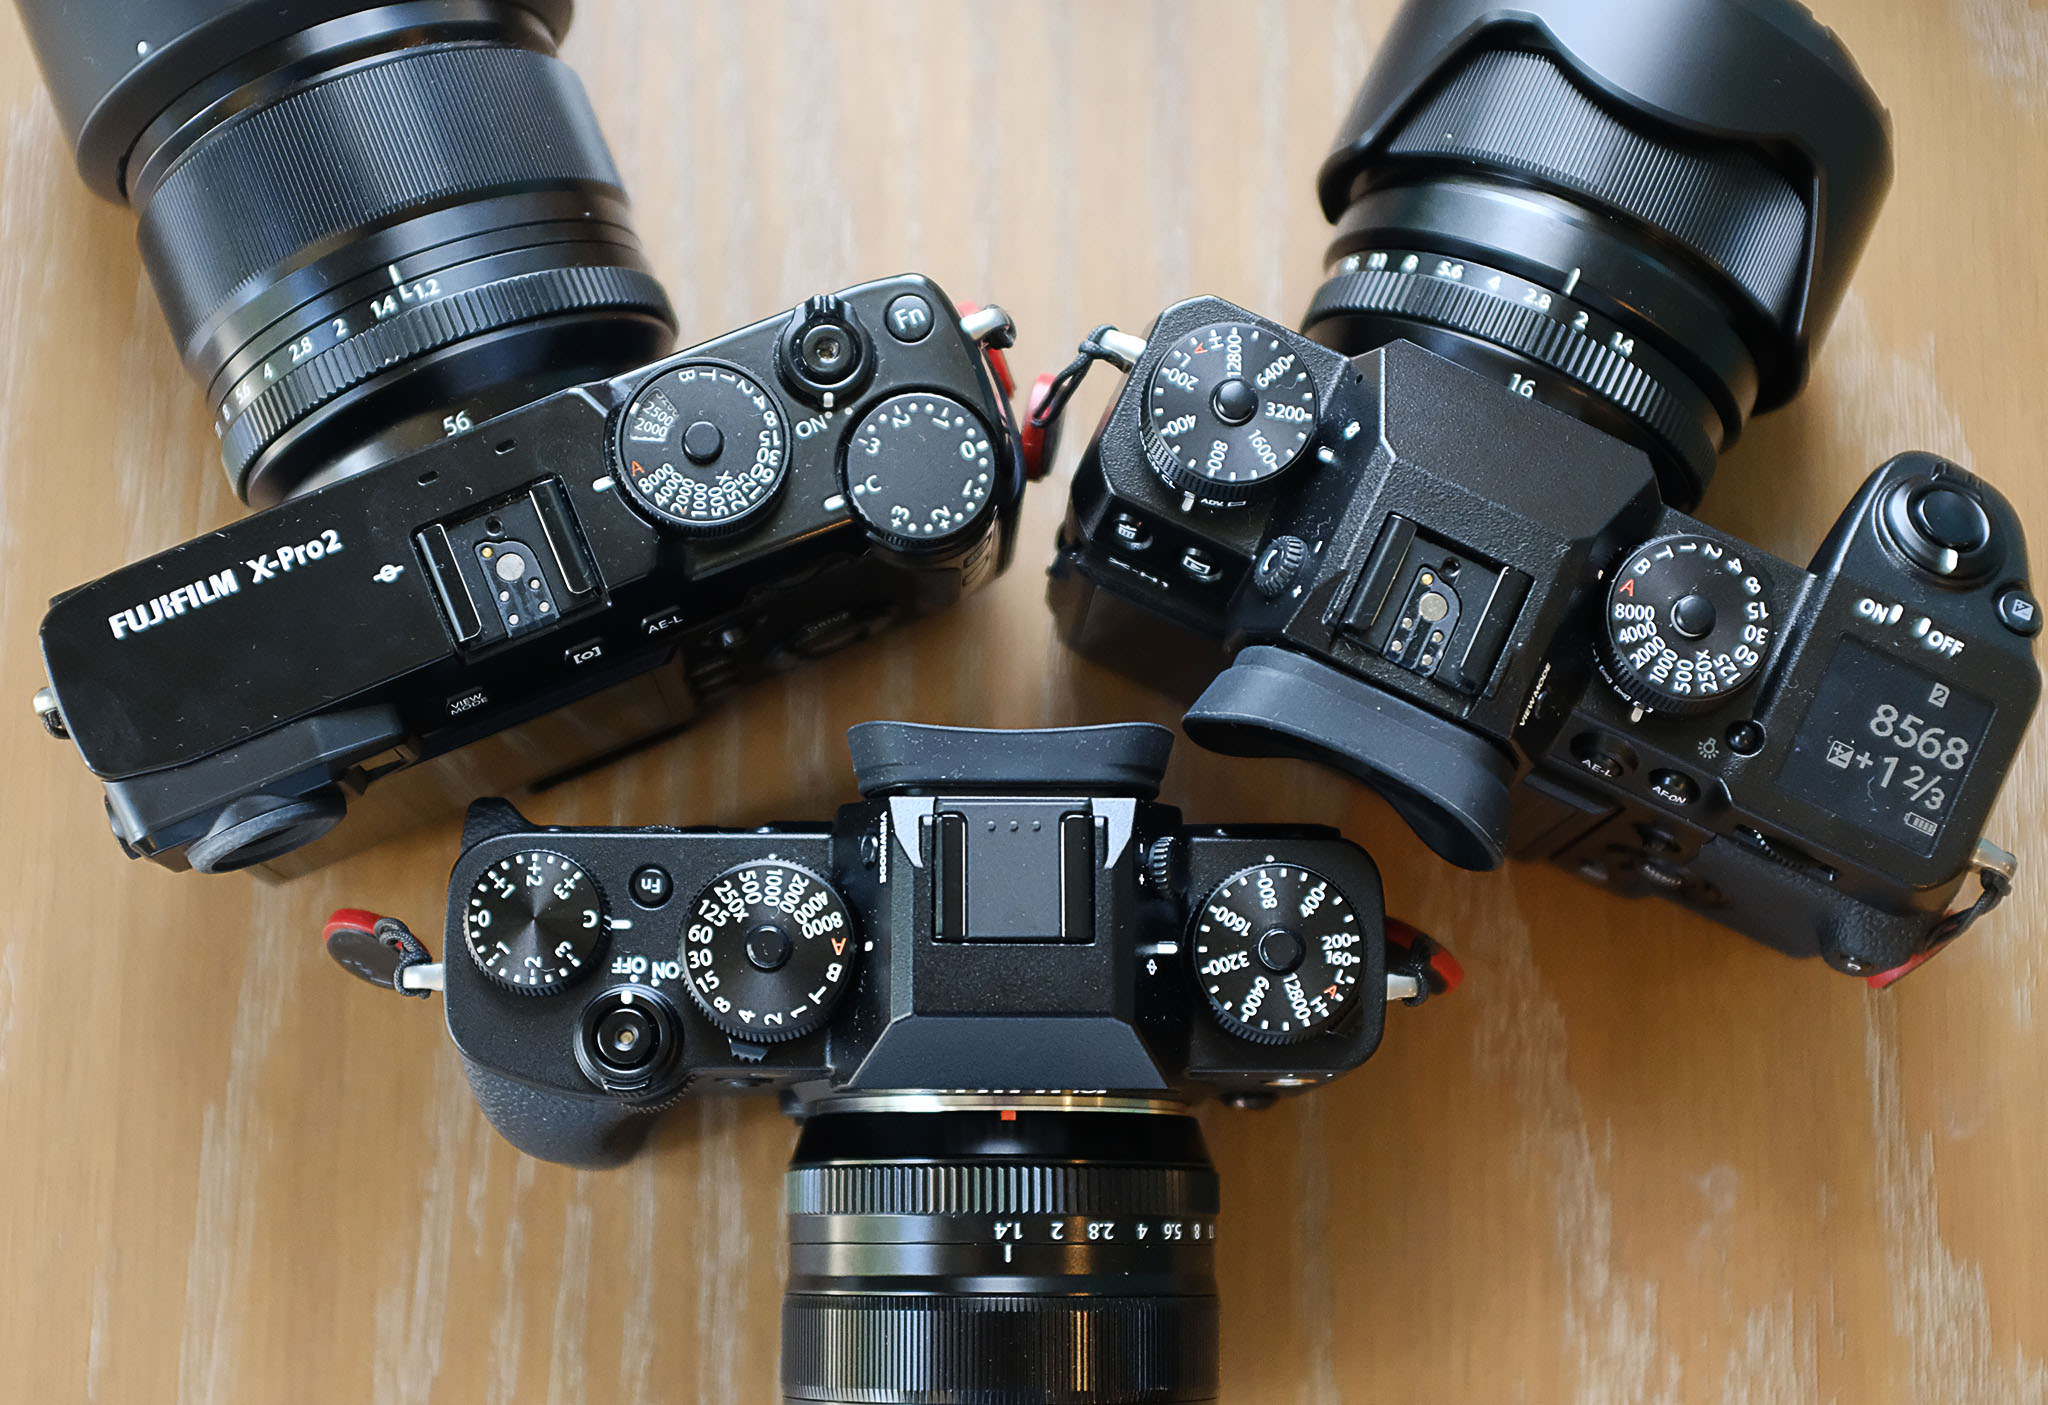 Top Left- Fujifilm X-Pro2, Top Right-Fujifilm X-H1, Bottom- Fujifilm X-T3.